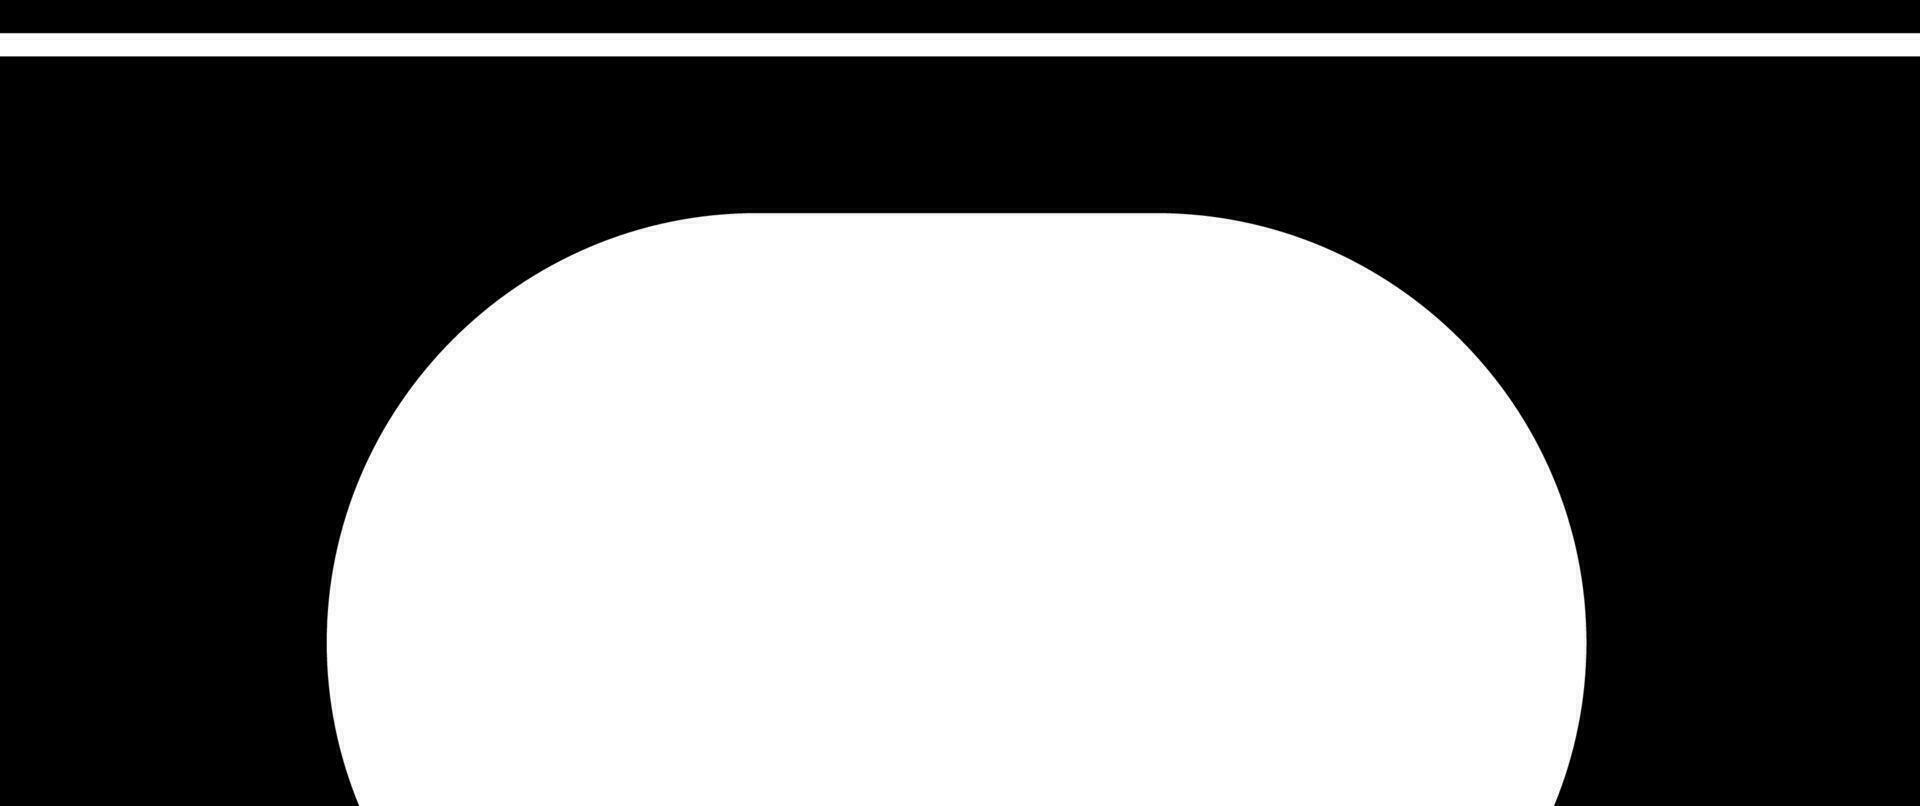 Tunnel under bridge icon in black color. vector